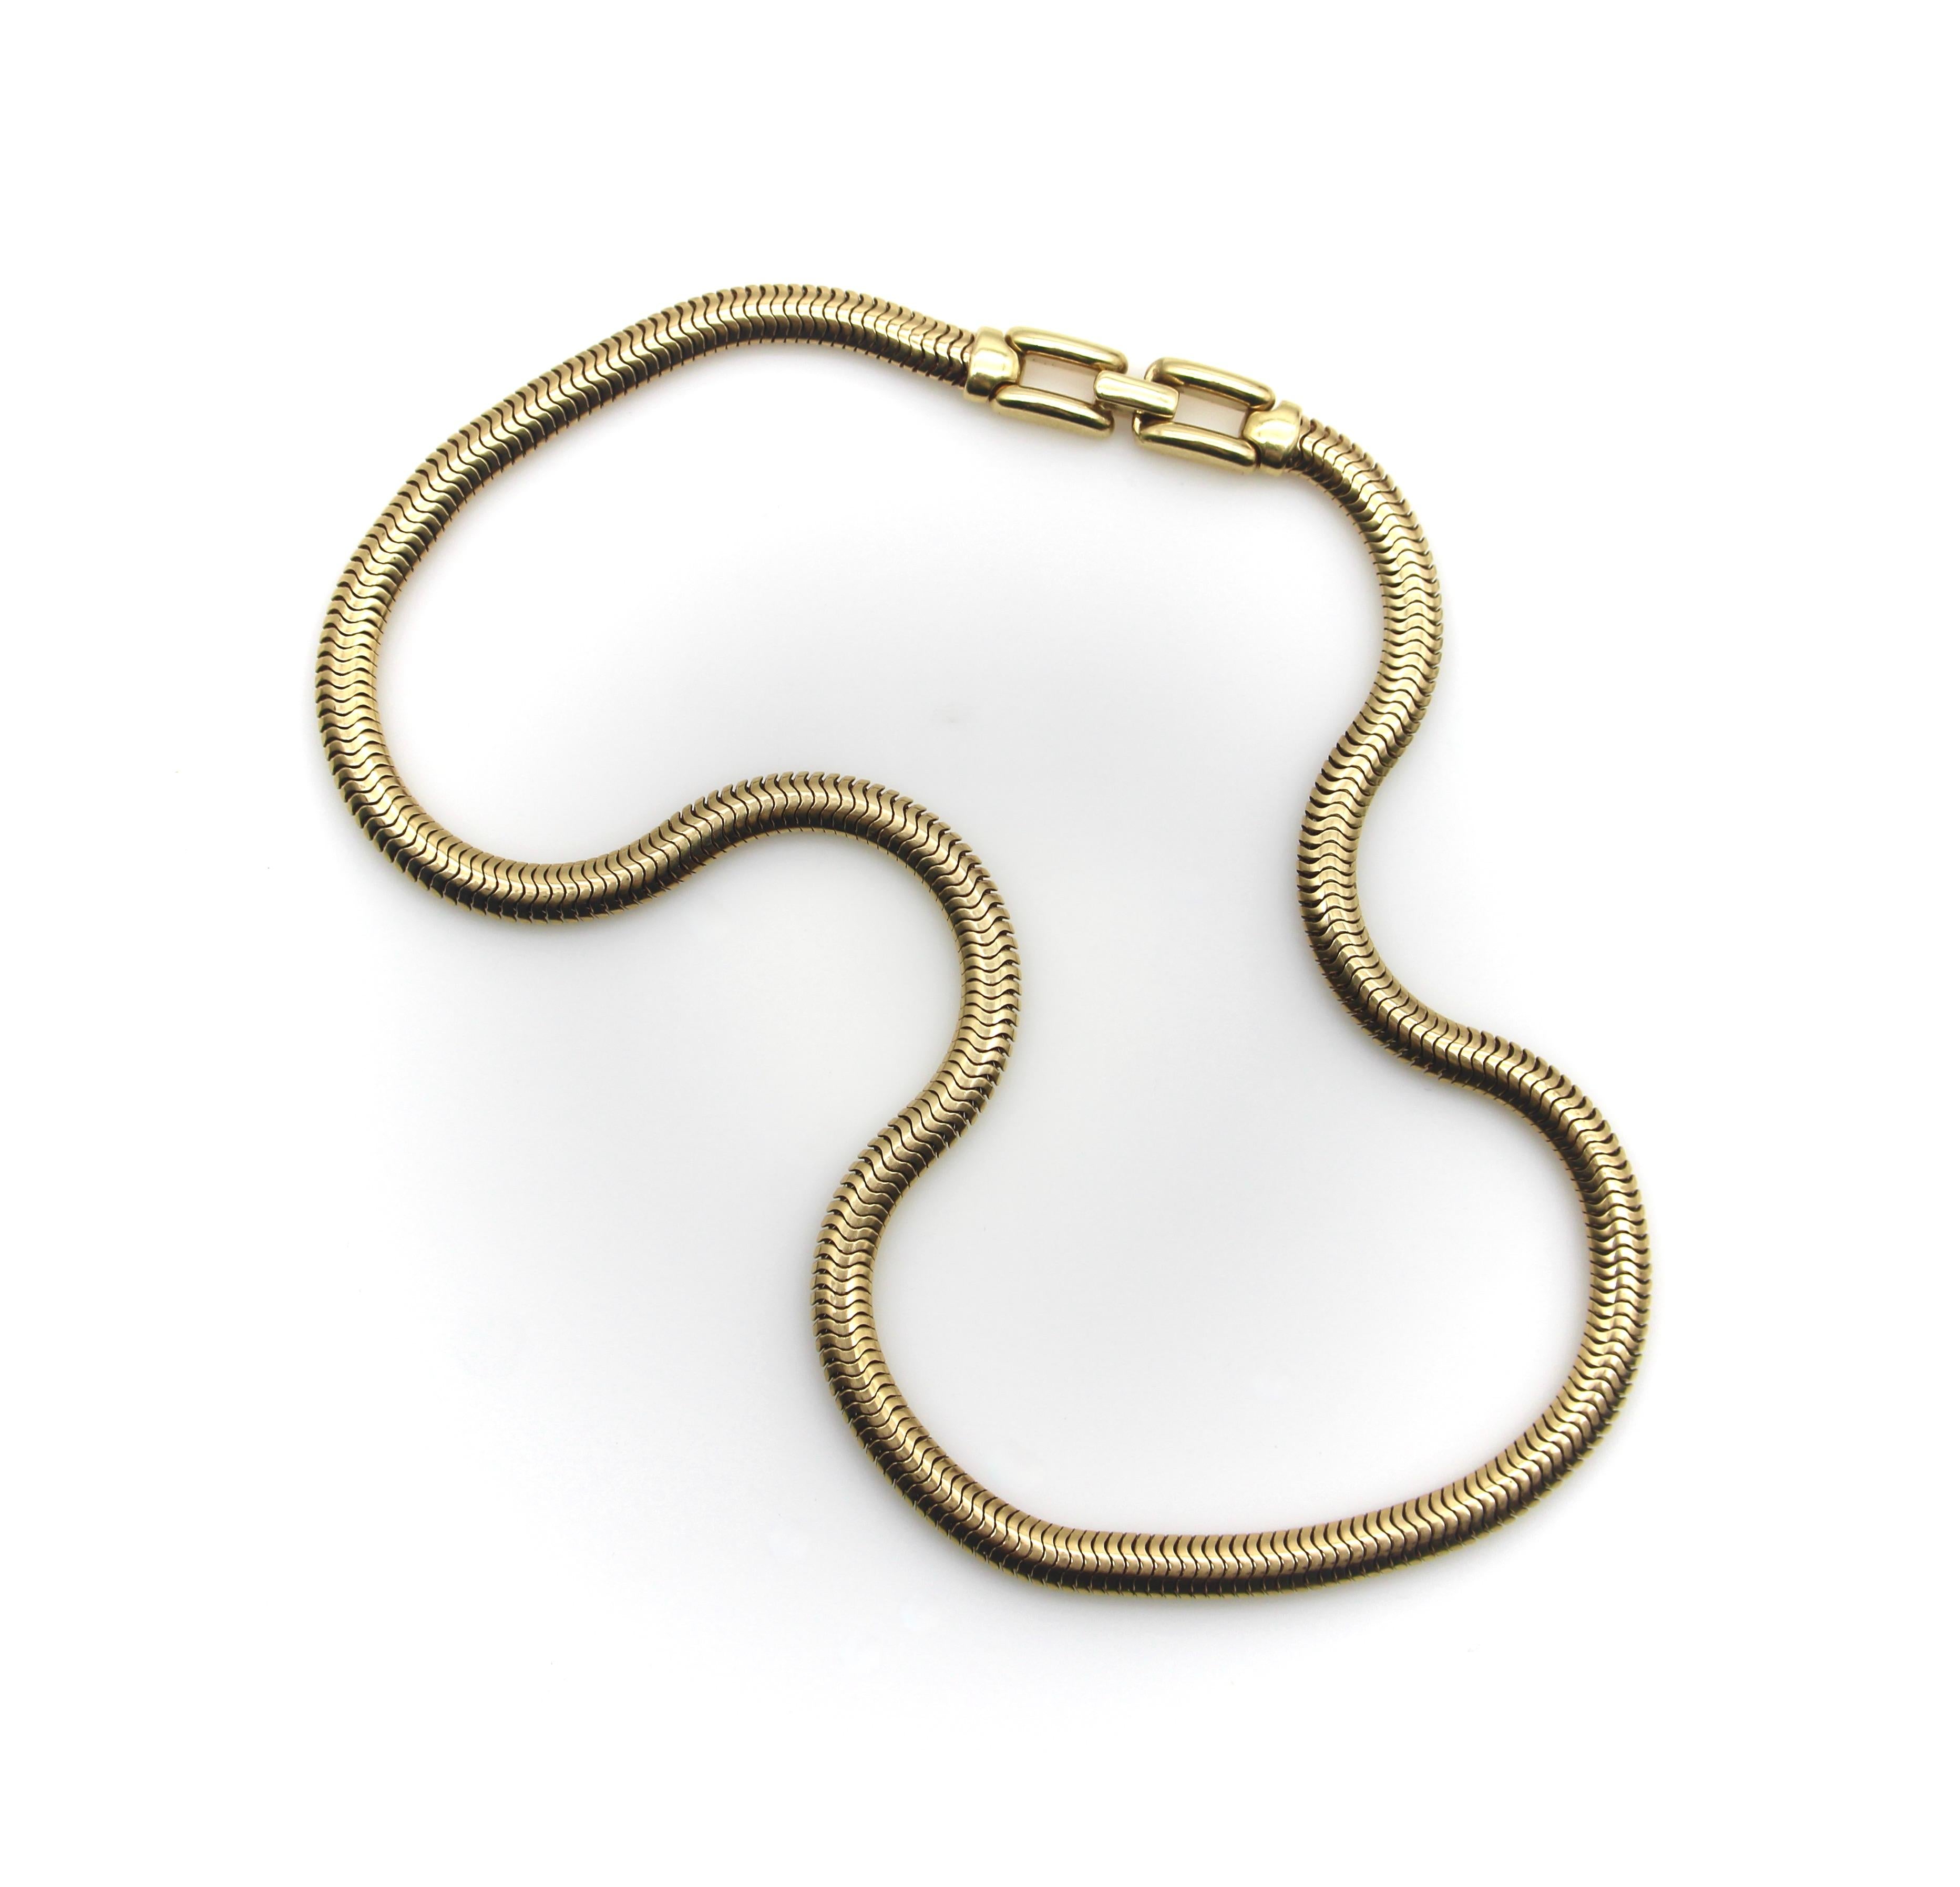 Fabriquée en or 14 carats, cette chaîne serpent vintage est la longueur idéale pour un collier ras-de-cou élégant. Avec une largeur de 5 mm, il s'agit d'une chaîne merveilleusement épaisse qui a une présence substantielle sur le cou. Parfaite seule